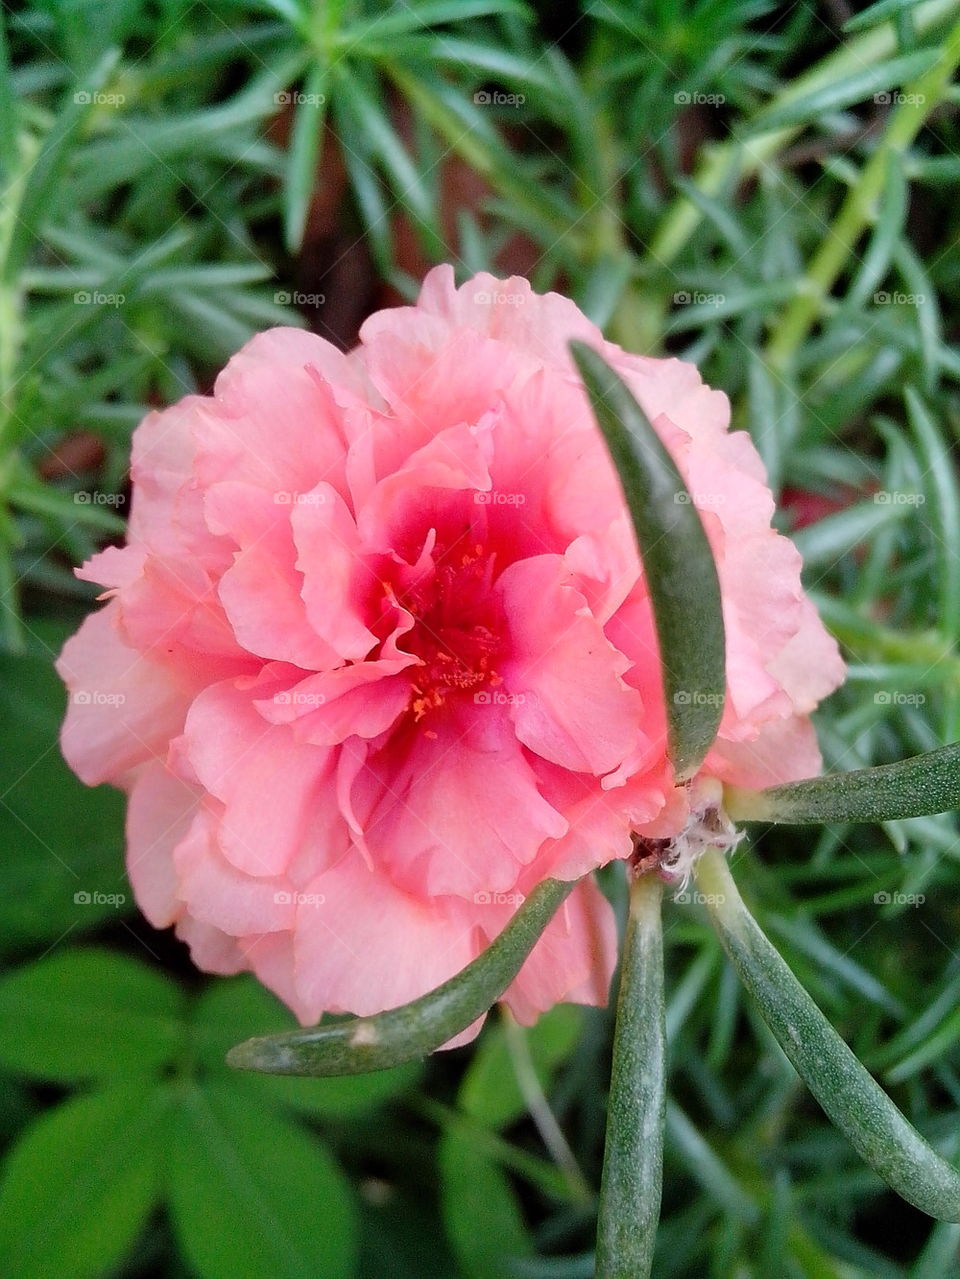 Vietnam rose